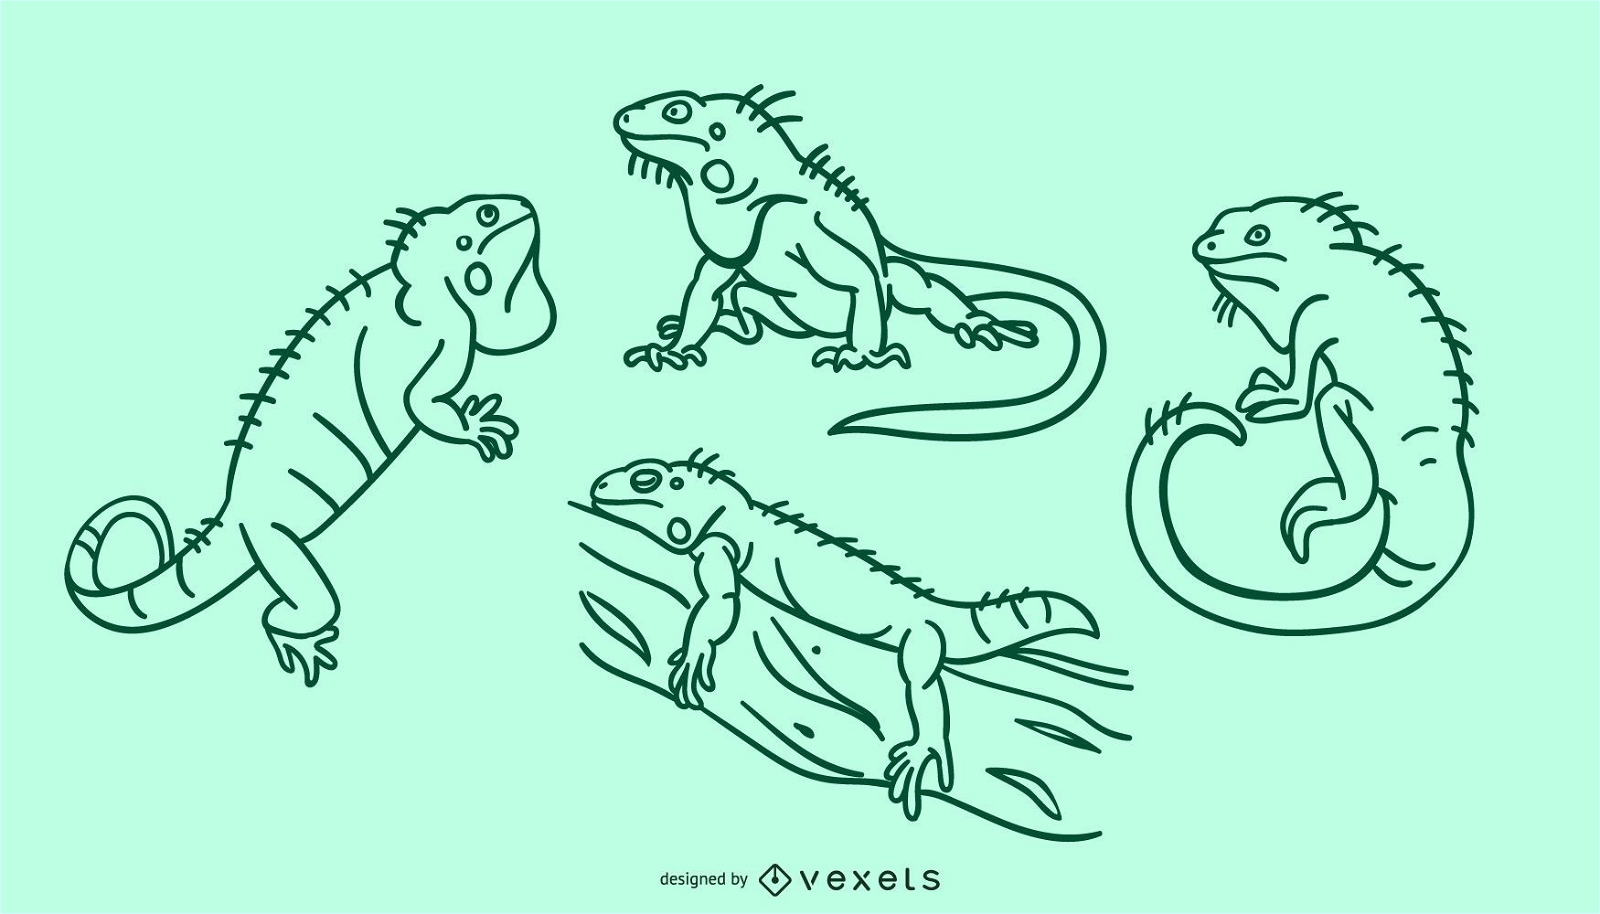 Iguana doodle set